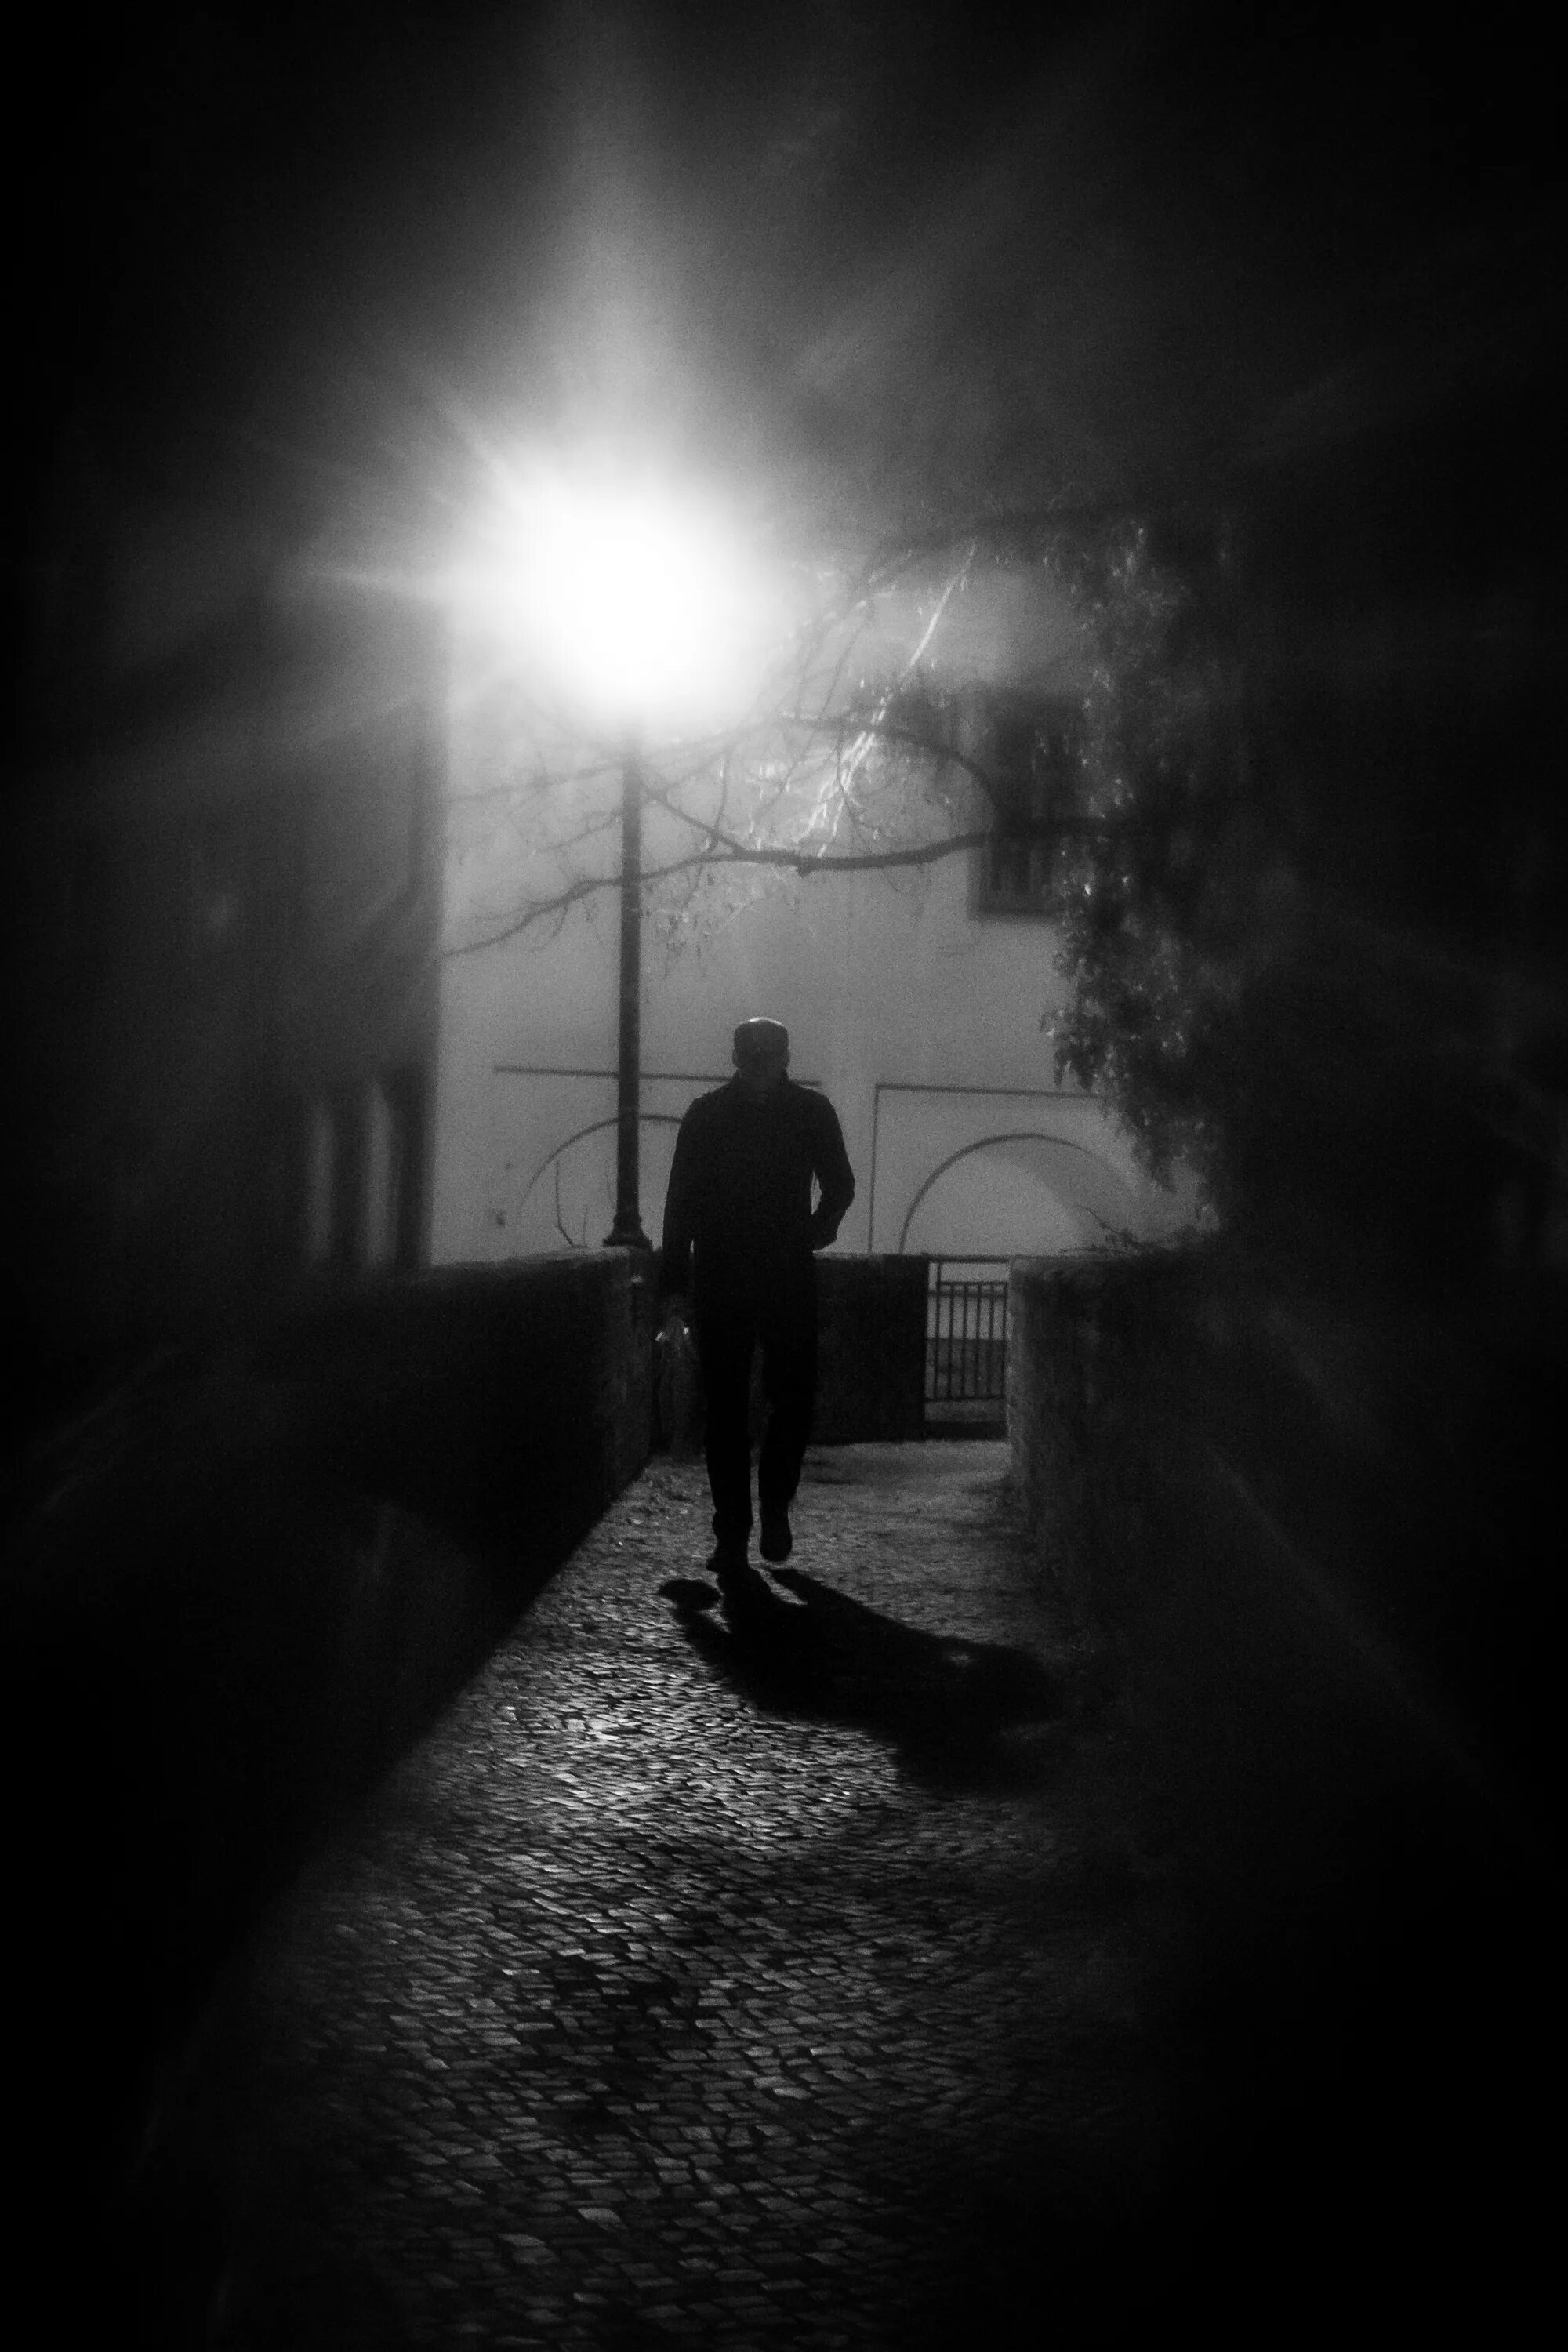 Тень человека ночью. Парень в темноте. Человек на темной улице. Тени ушедших. Одиночество в ночи.